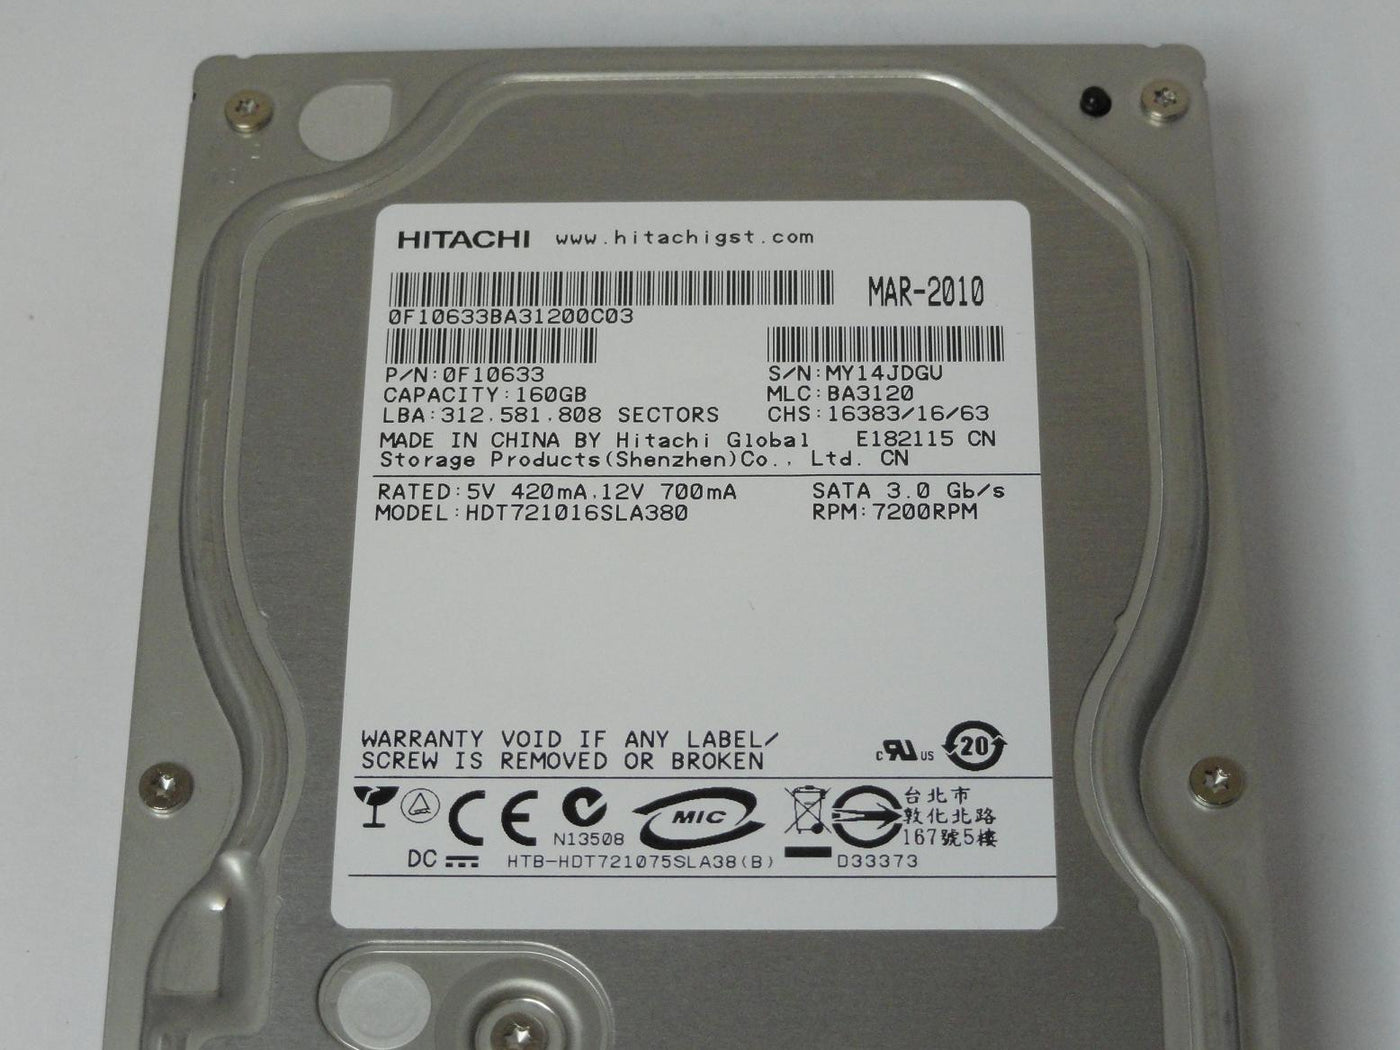 PR05566_0F10633_Hitachi 160GB SATA 7200rpm 3.5in HDD - Image3